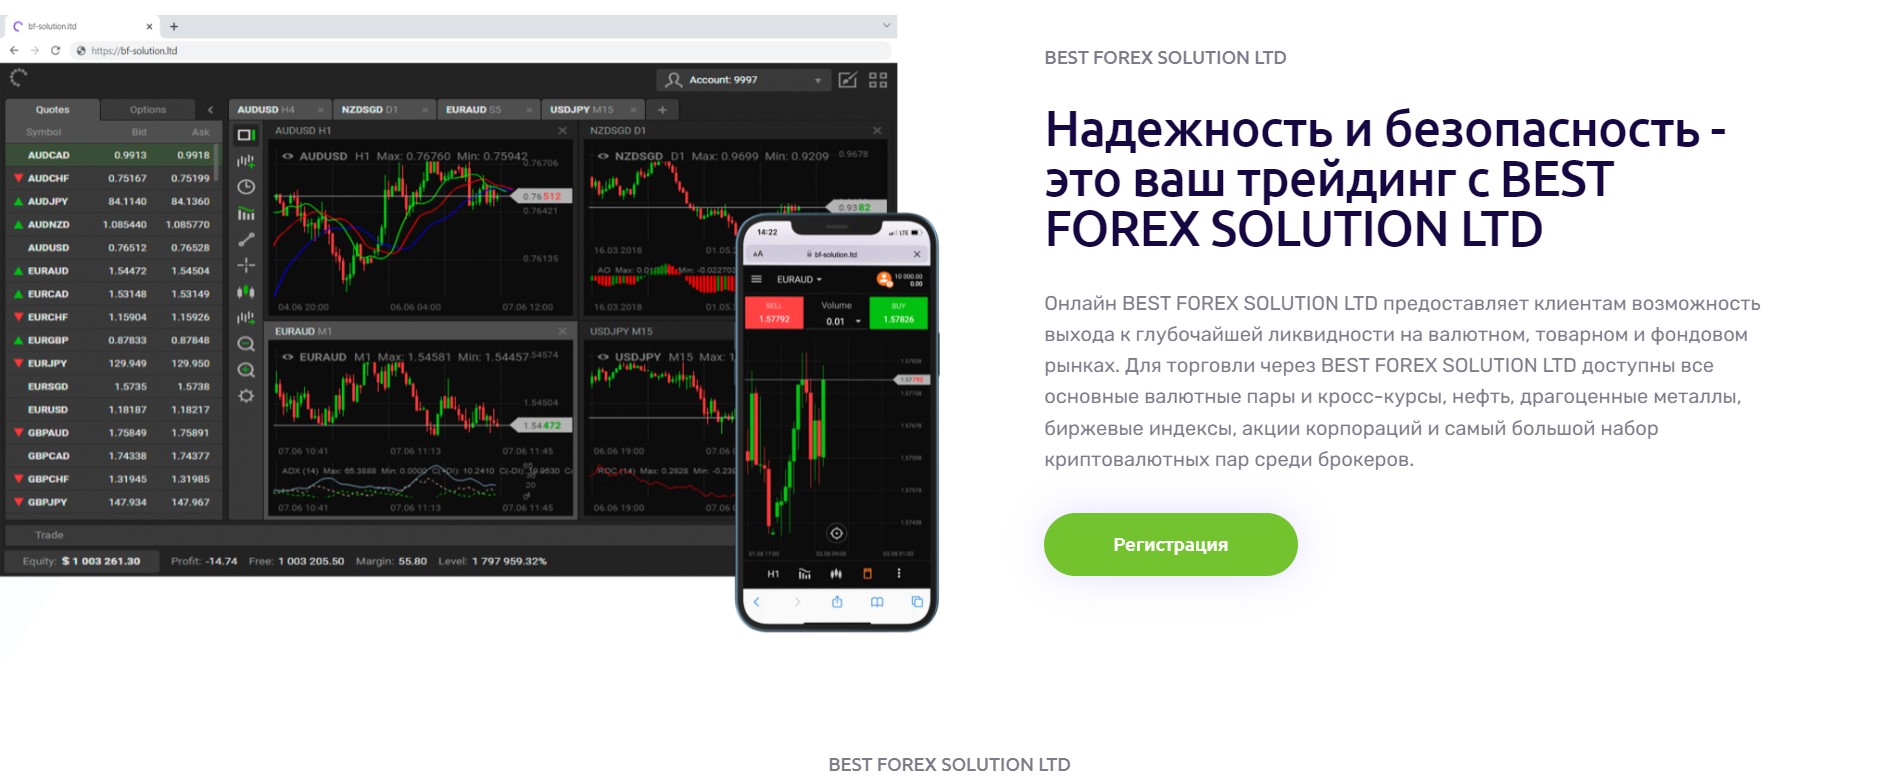 Best Forex Solution Ltd